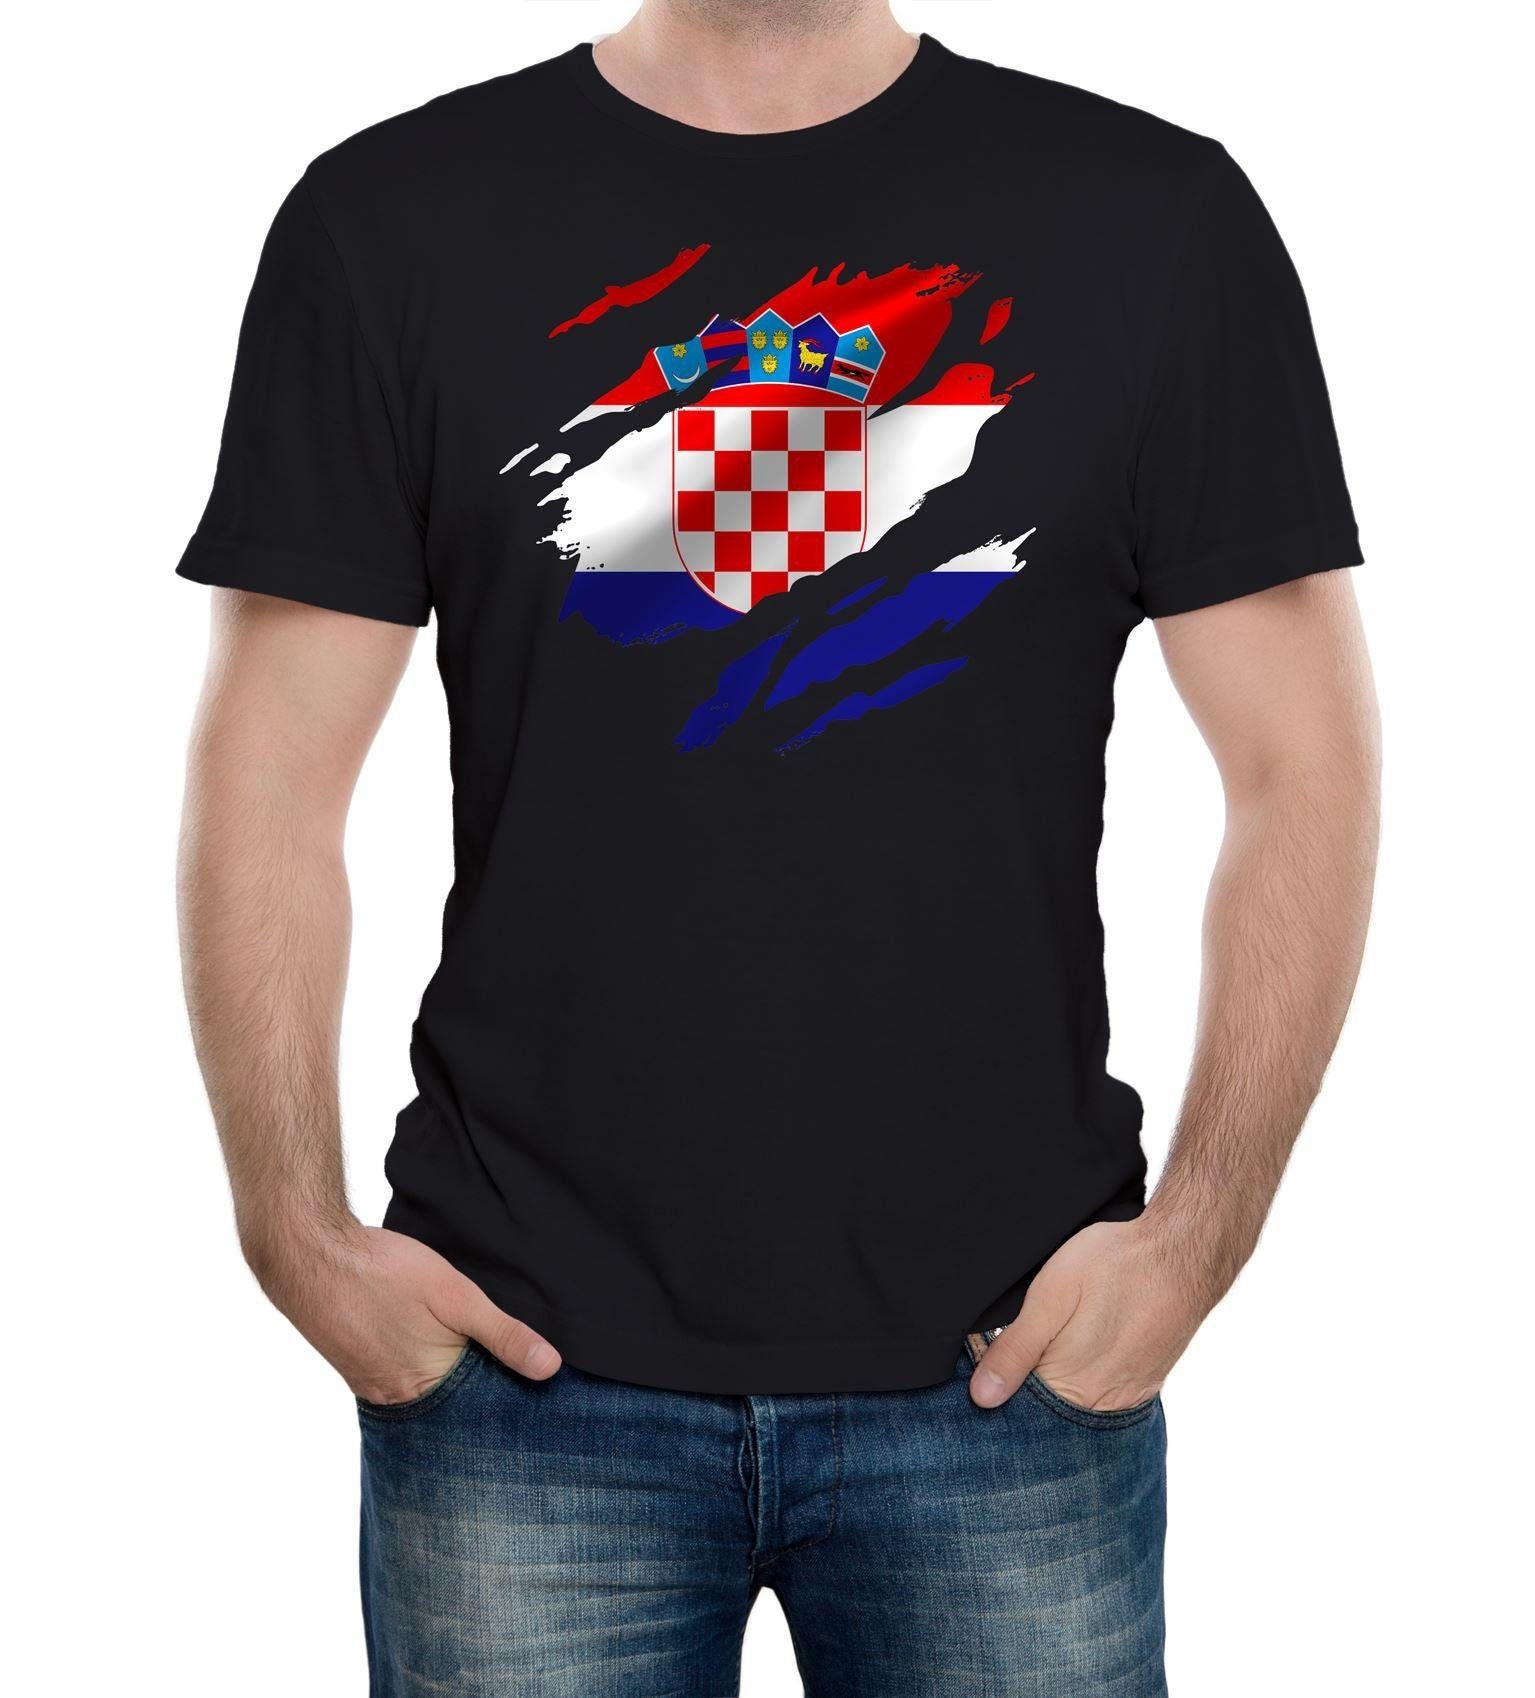 Josip Simunic's retro Croatia kit